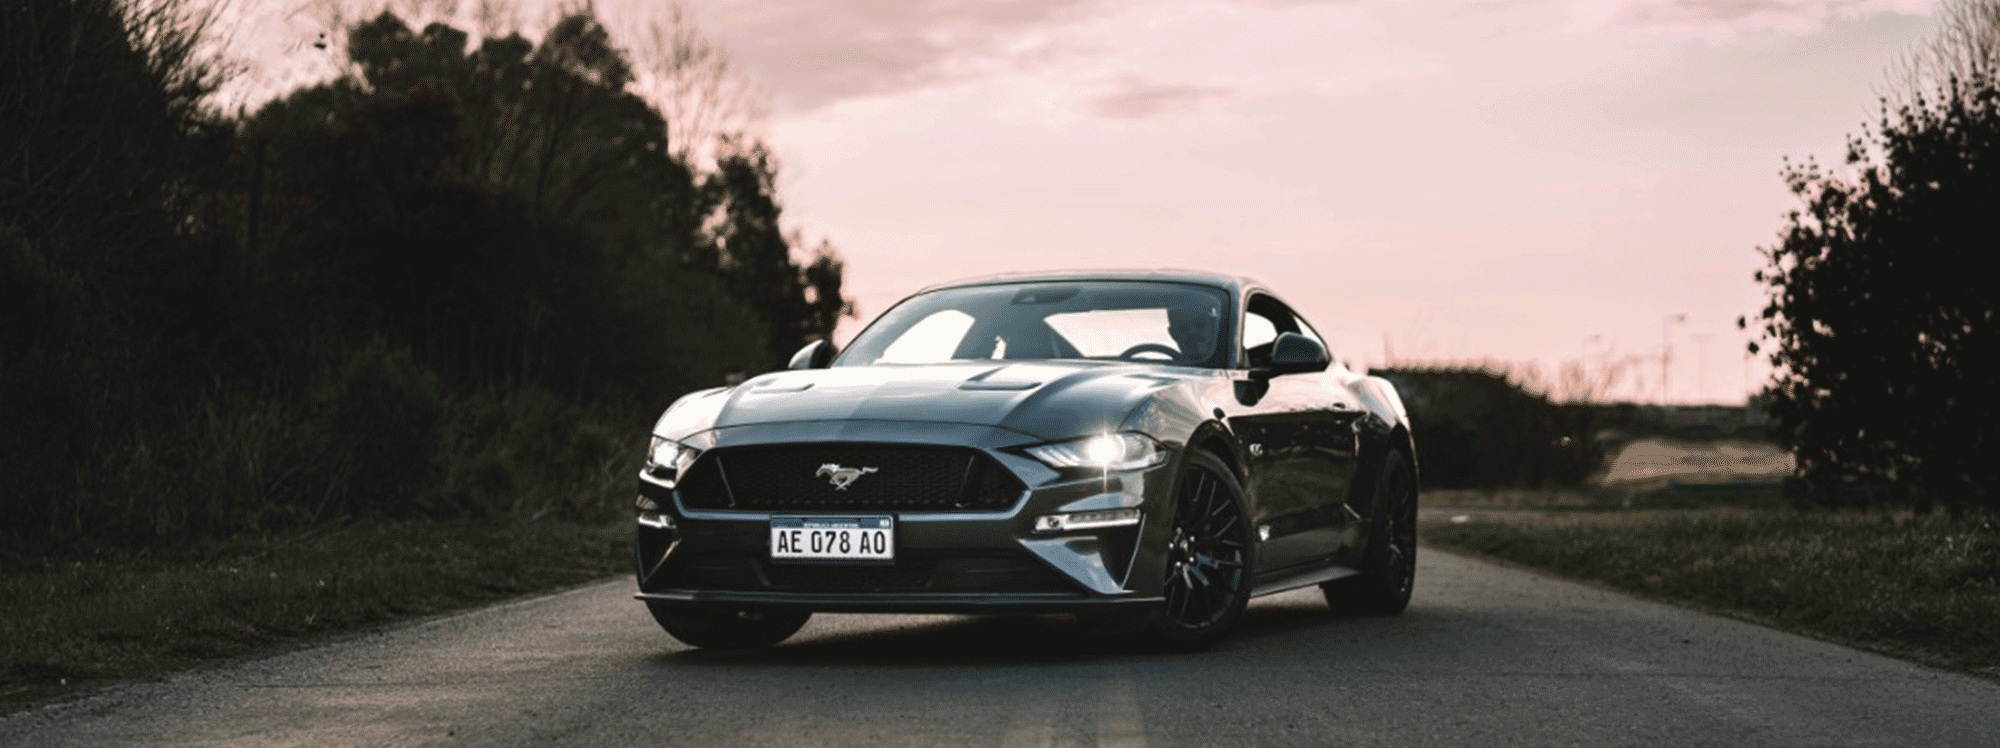 Mustang celebra 58 años con el deportivo más vendido del mundo